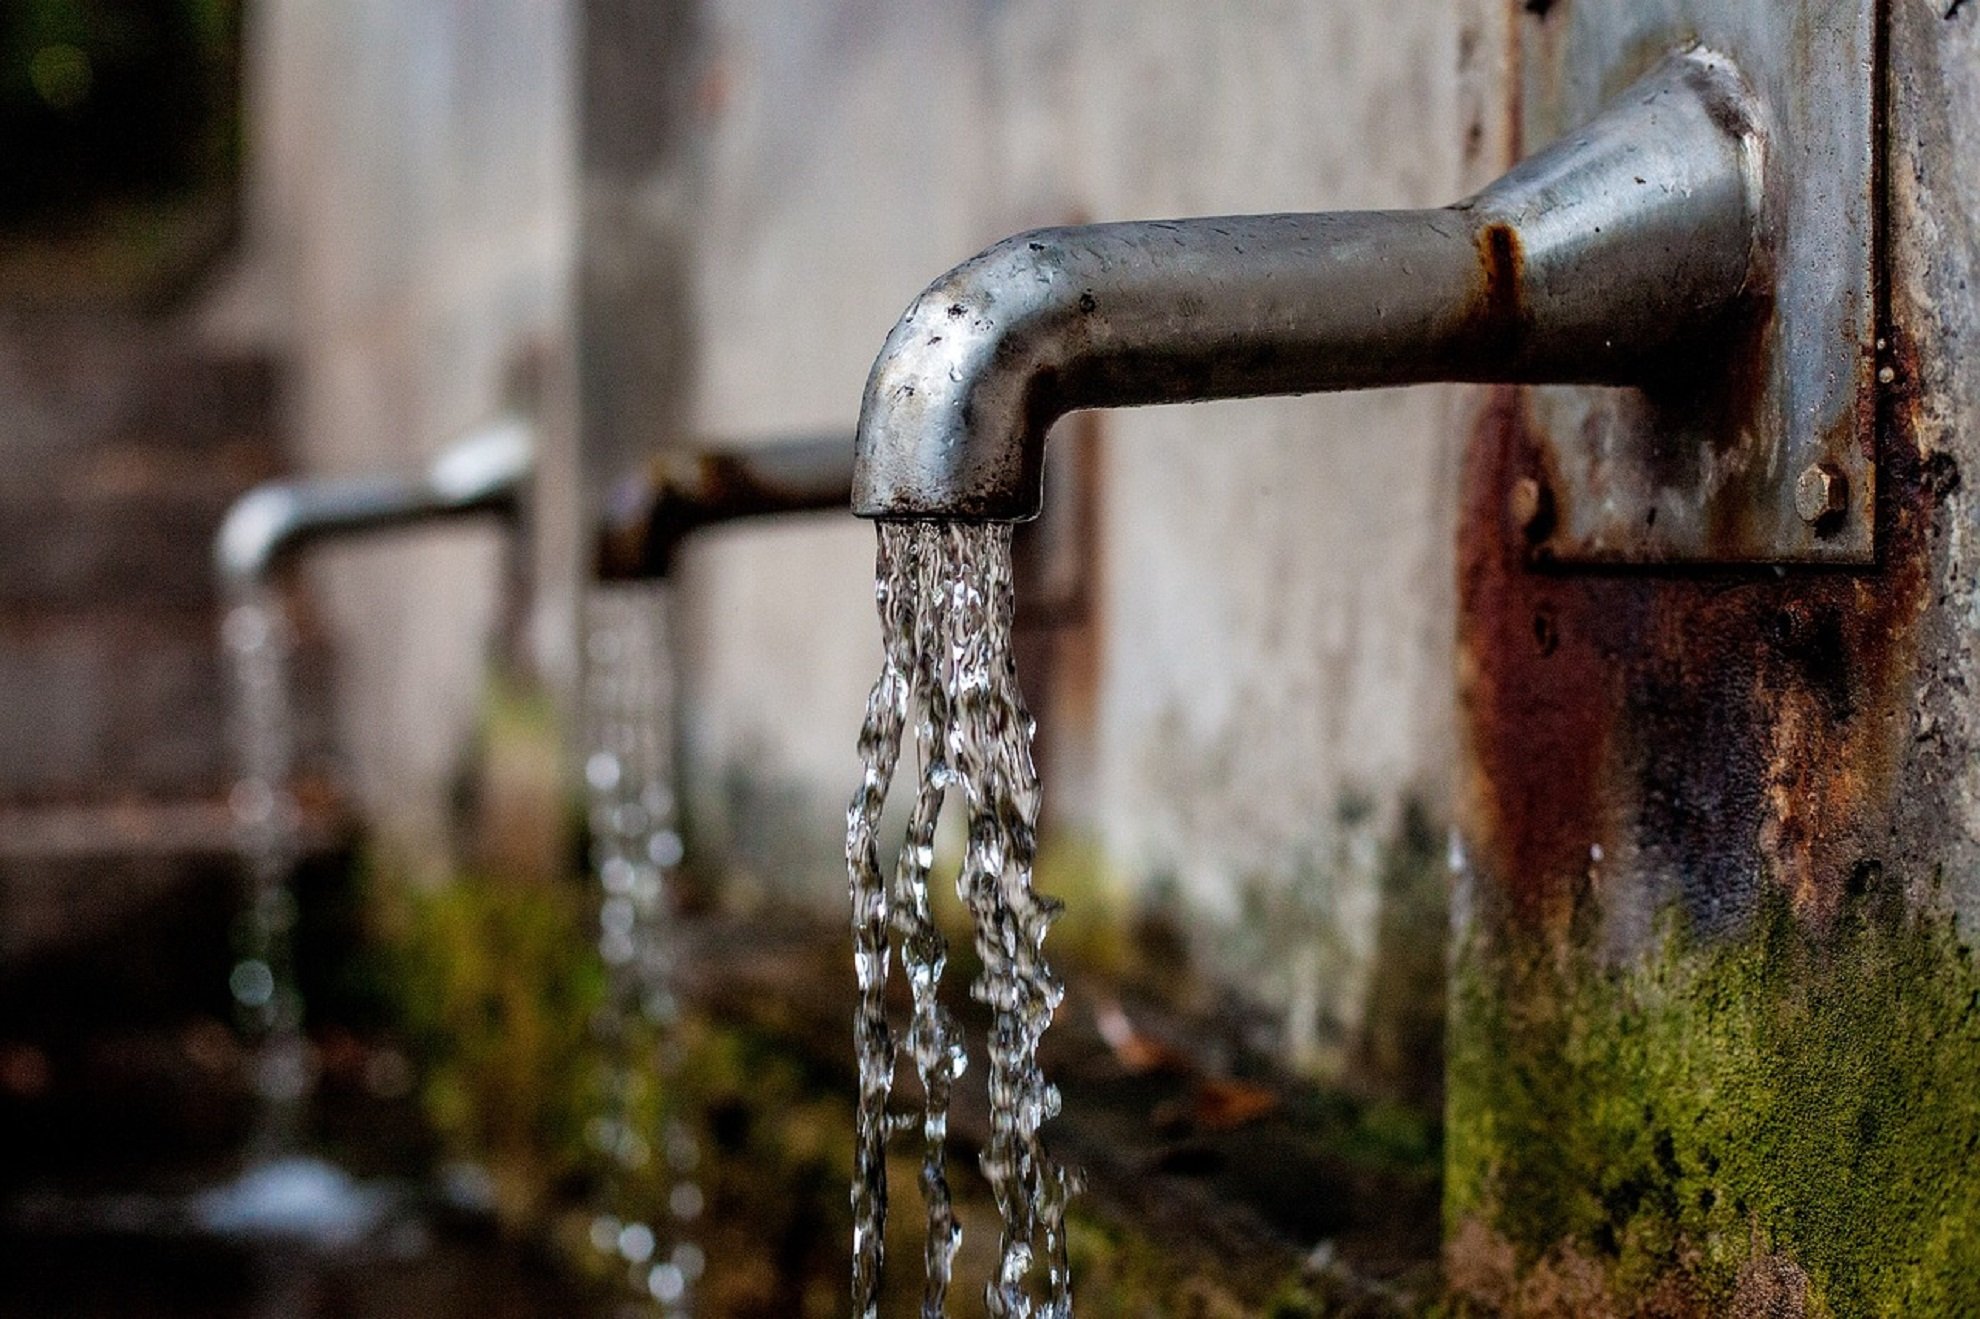 L'ONU demana "polítiques intel·ligents" per garantir l'accés a l'aigua davant del canvi climàtic